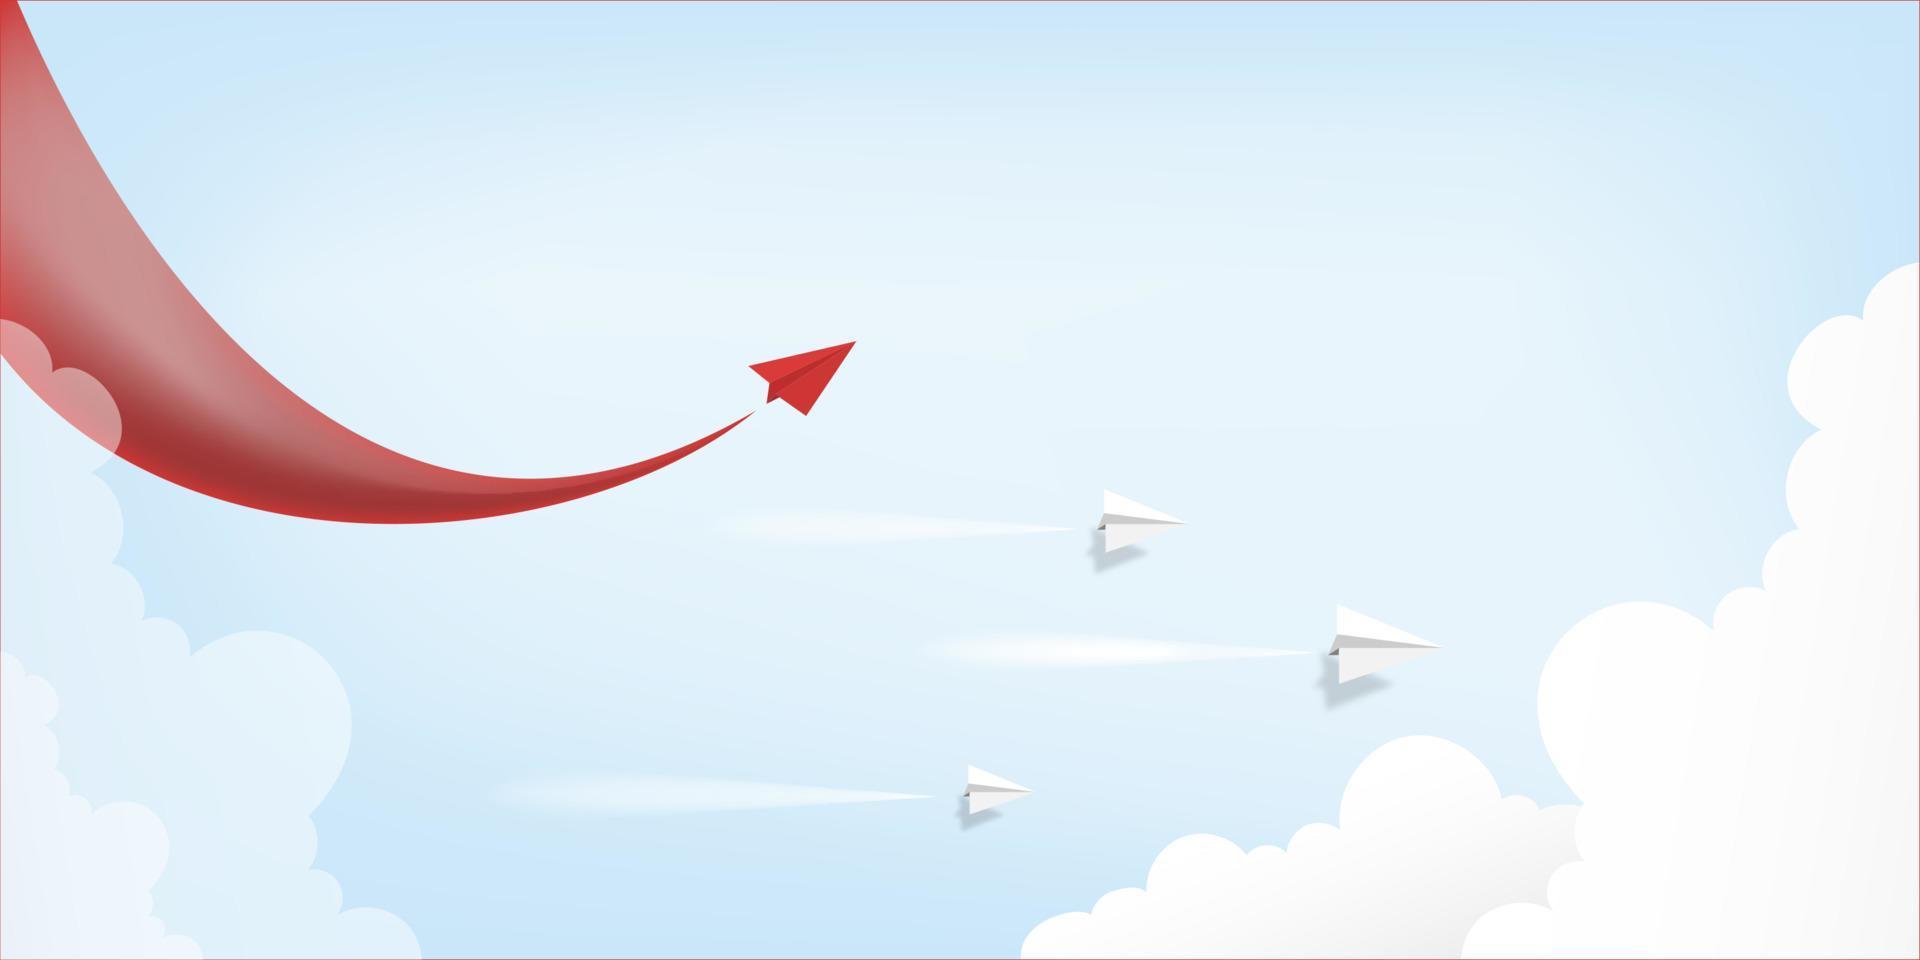 líder de avião de papel vermelho voando sobre fundo de céu azul. ideia de conceito criativo de sucesso nos negócios e liderança em design de estilo de arte de papel artesanal ilustração vetorial vetor